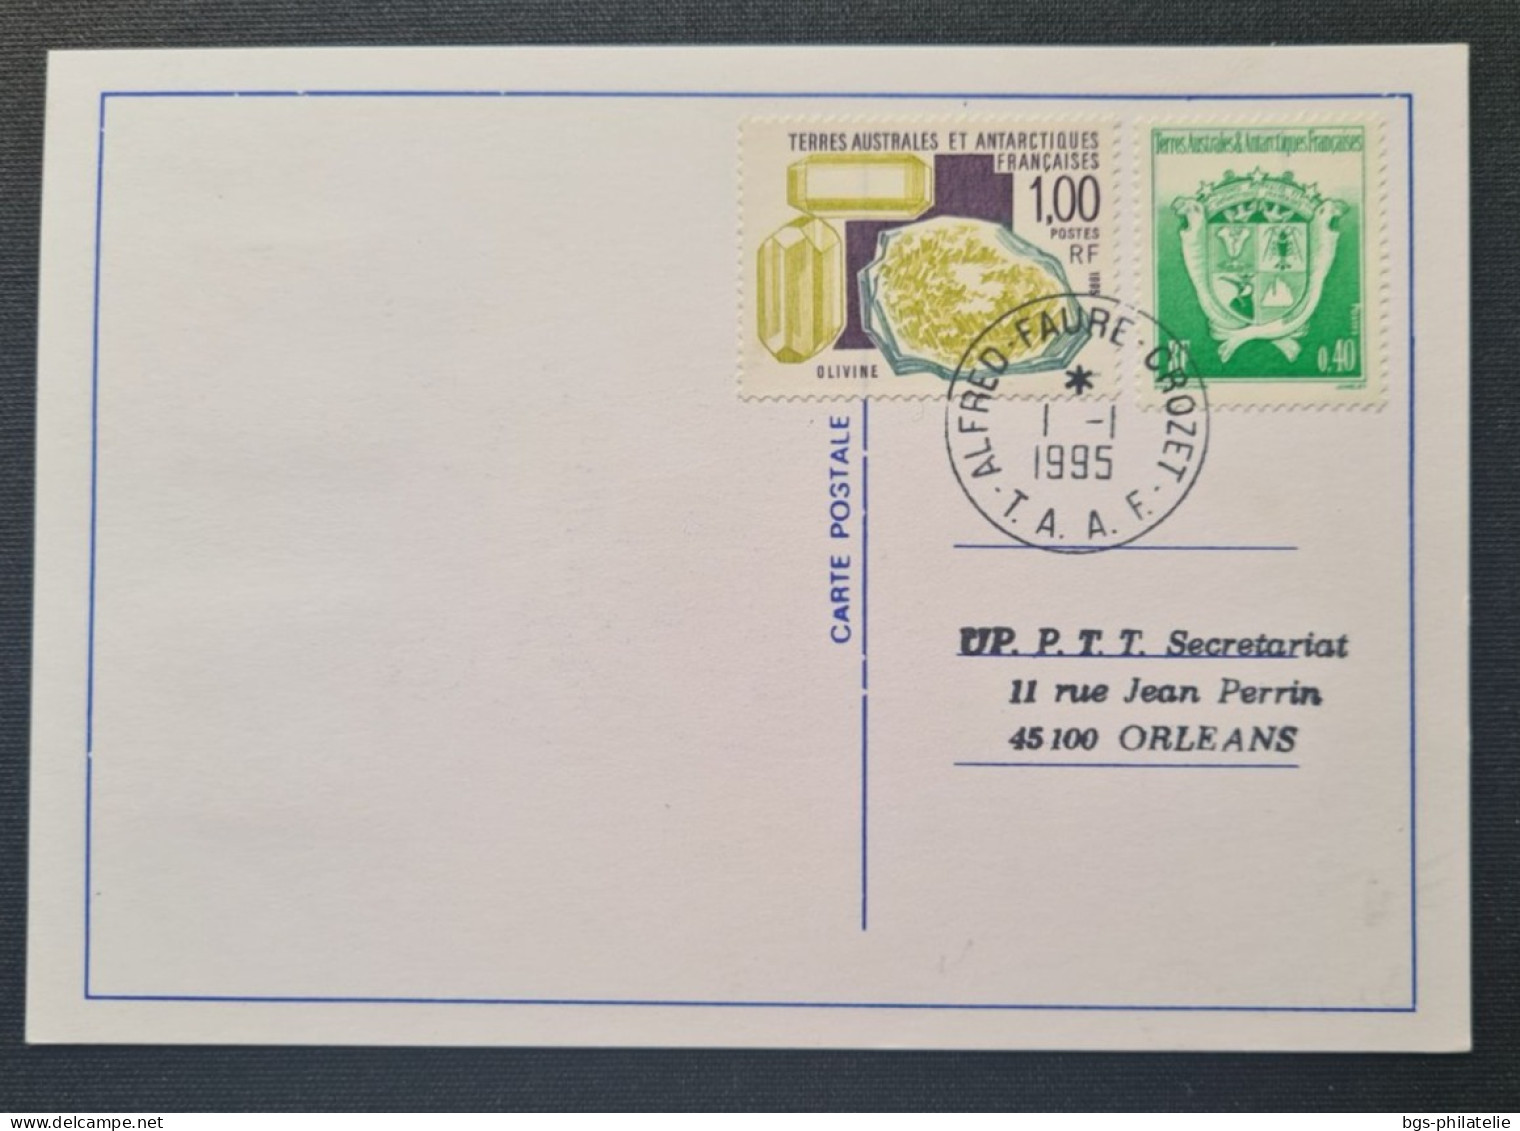 TAAF, Timbres Numéros 194×2 Et 184 + 195 Au Verso  Oblitérés De CROZET Le 1/1/1995. - Lettres & Documents